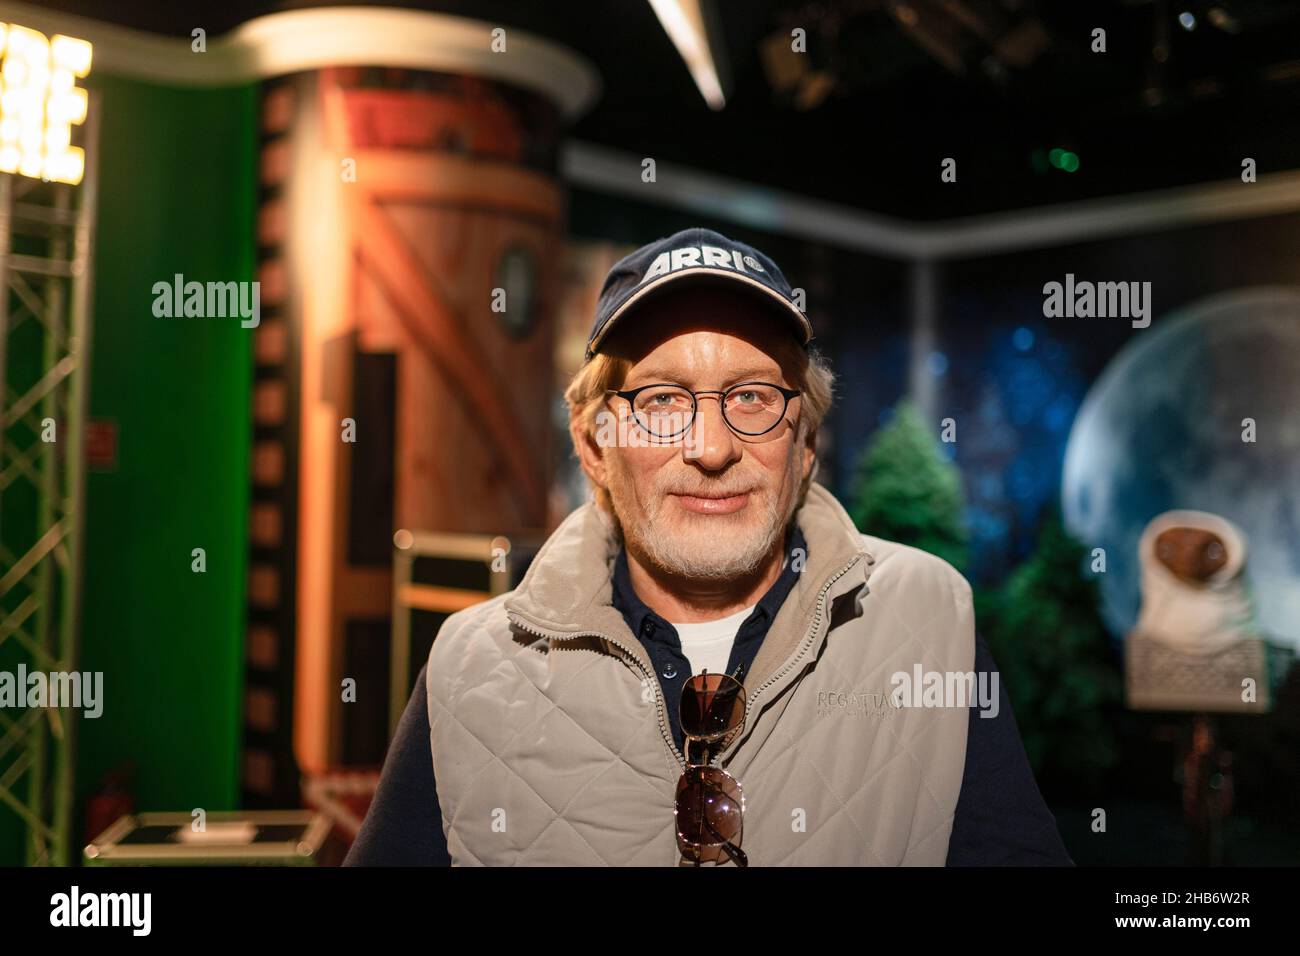 Steven Spielberg Wachsporträt bei Madame Tussauds Istanbul. Steven Spielberg ist ein amerikanischer Regisseur, Produzent und Drehbuchautor. Stockfoto